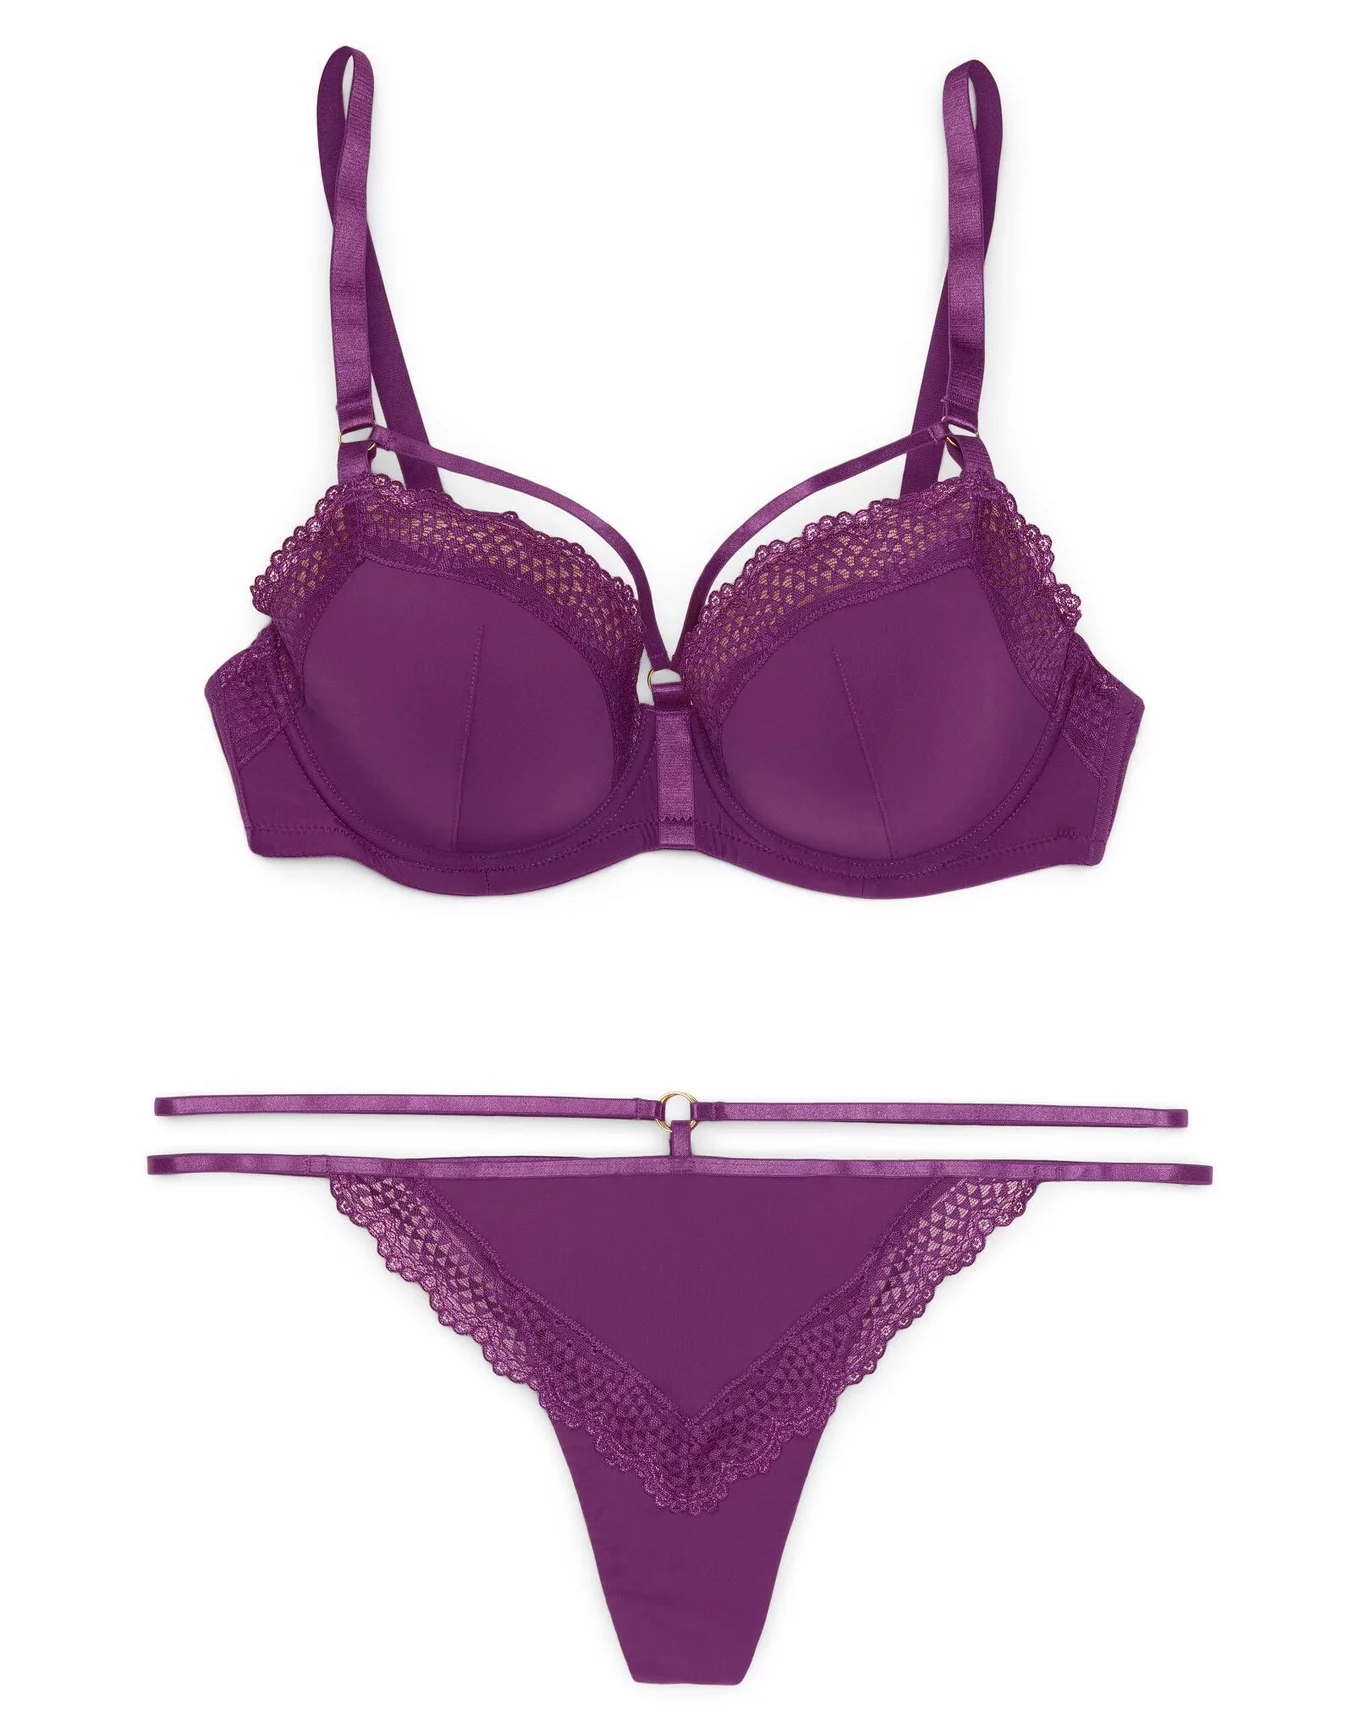 Nicole Eyelash Lace Bralette 40-11425 - Zinfandel/Black – Purple Cactus  Lingerie